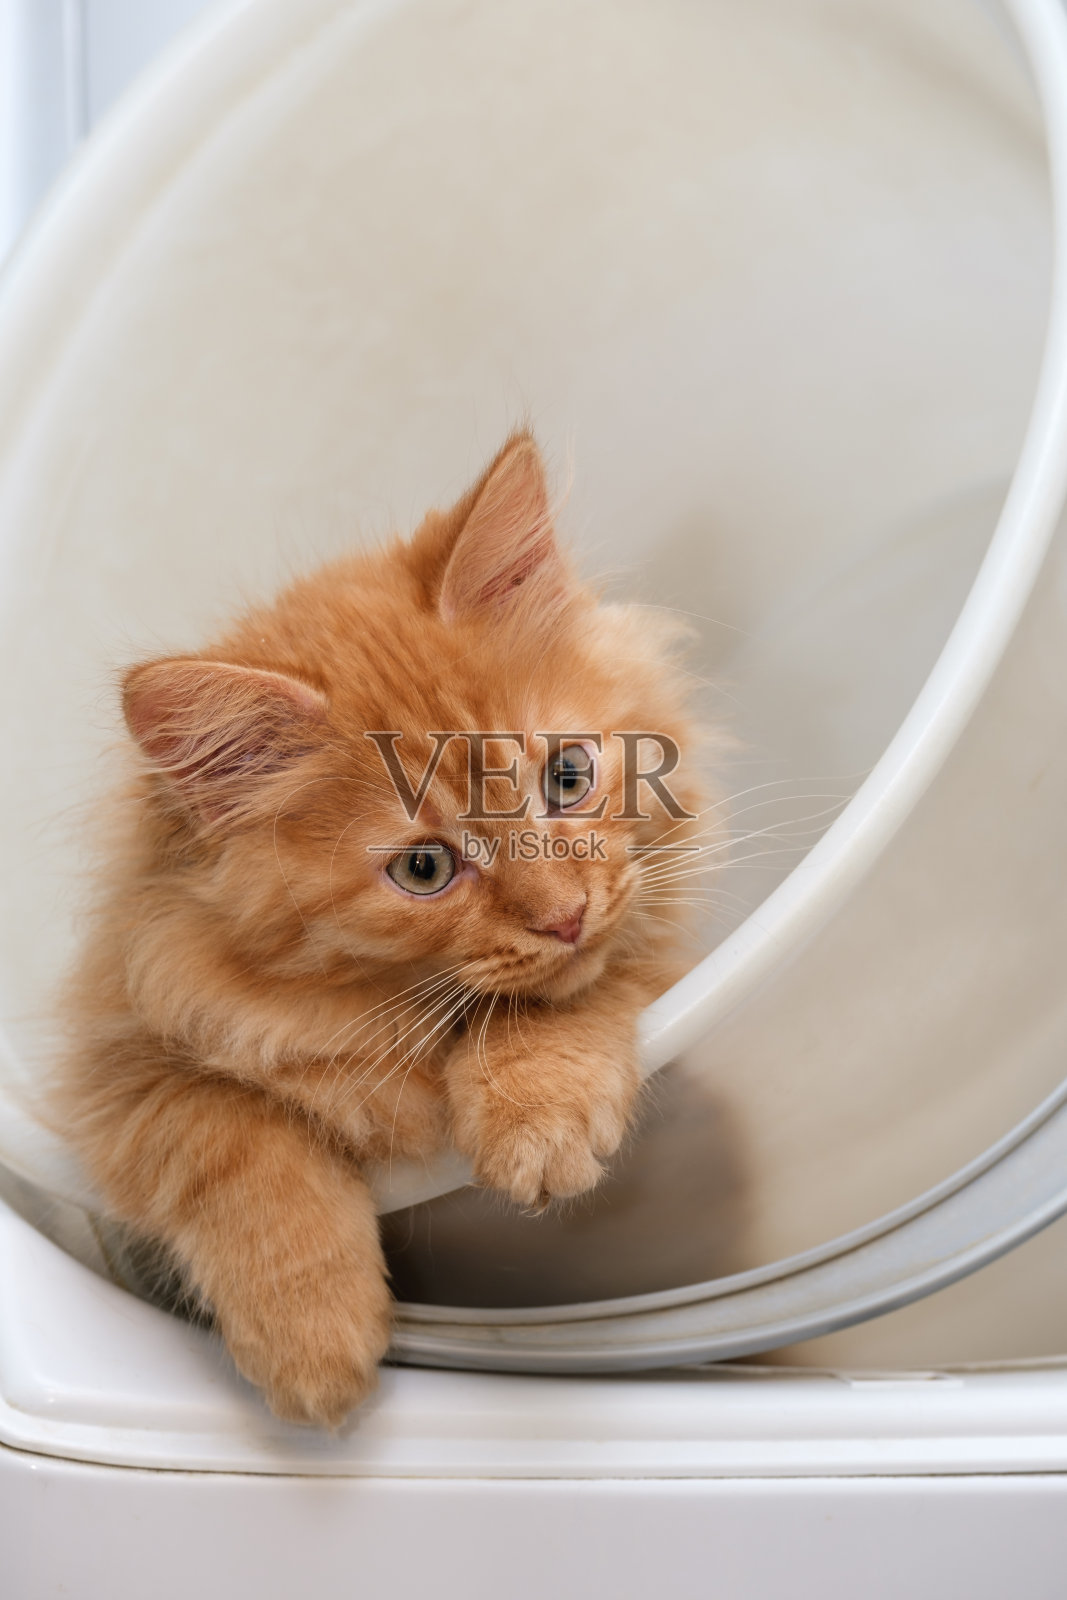 白色塑料桶里装着一只漂亮的姜黄色小猫照片摄影图片